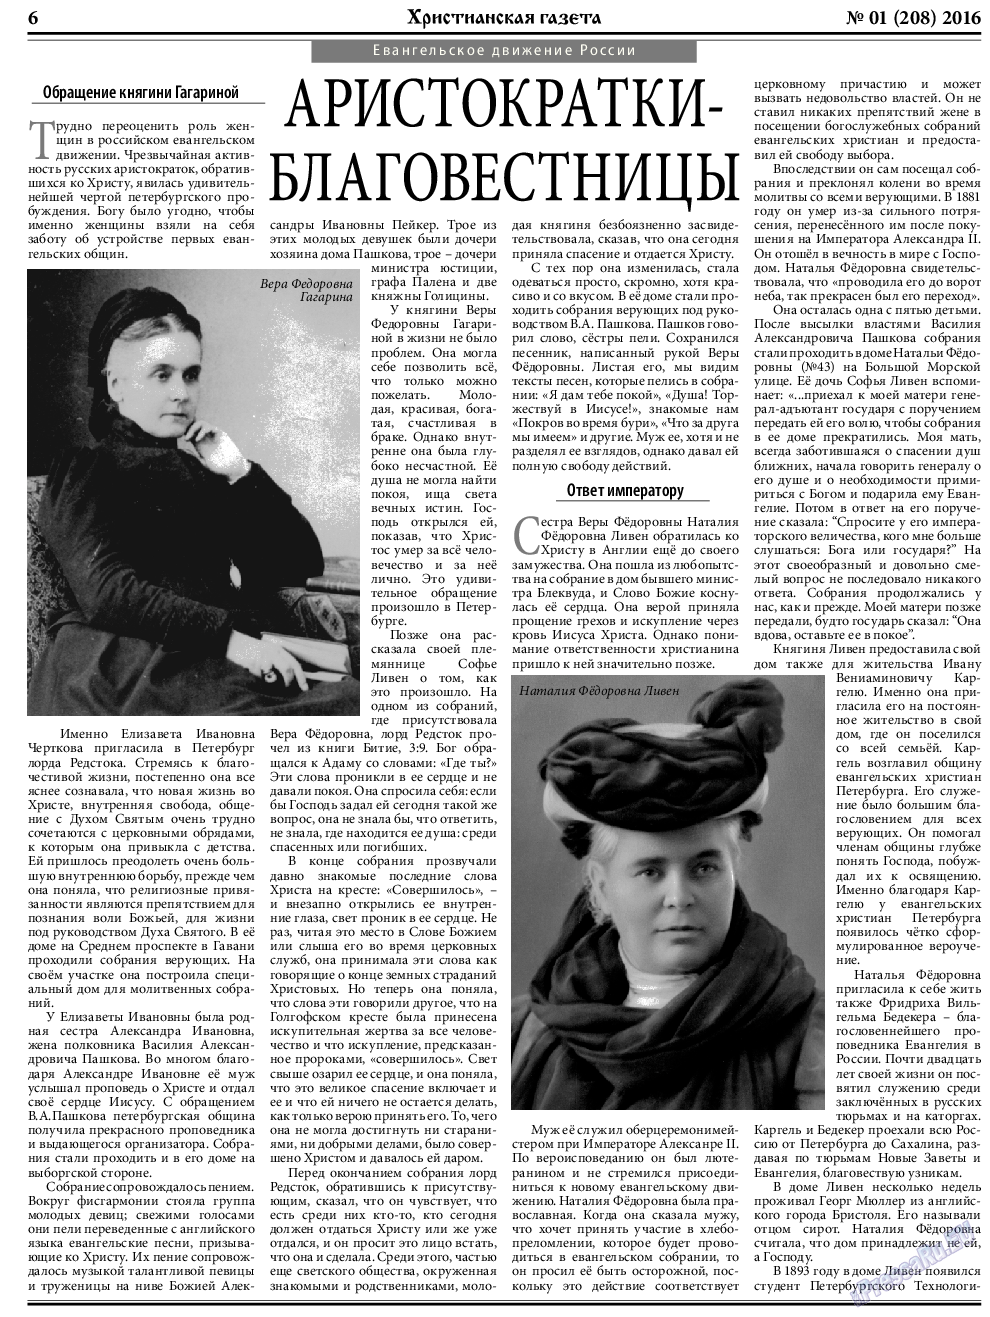 Христианская газета, газета. 2016 №1 стр.6